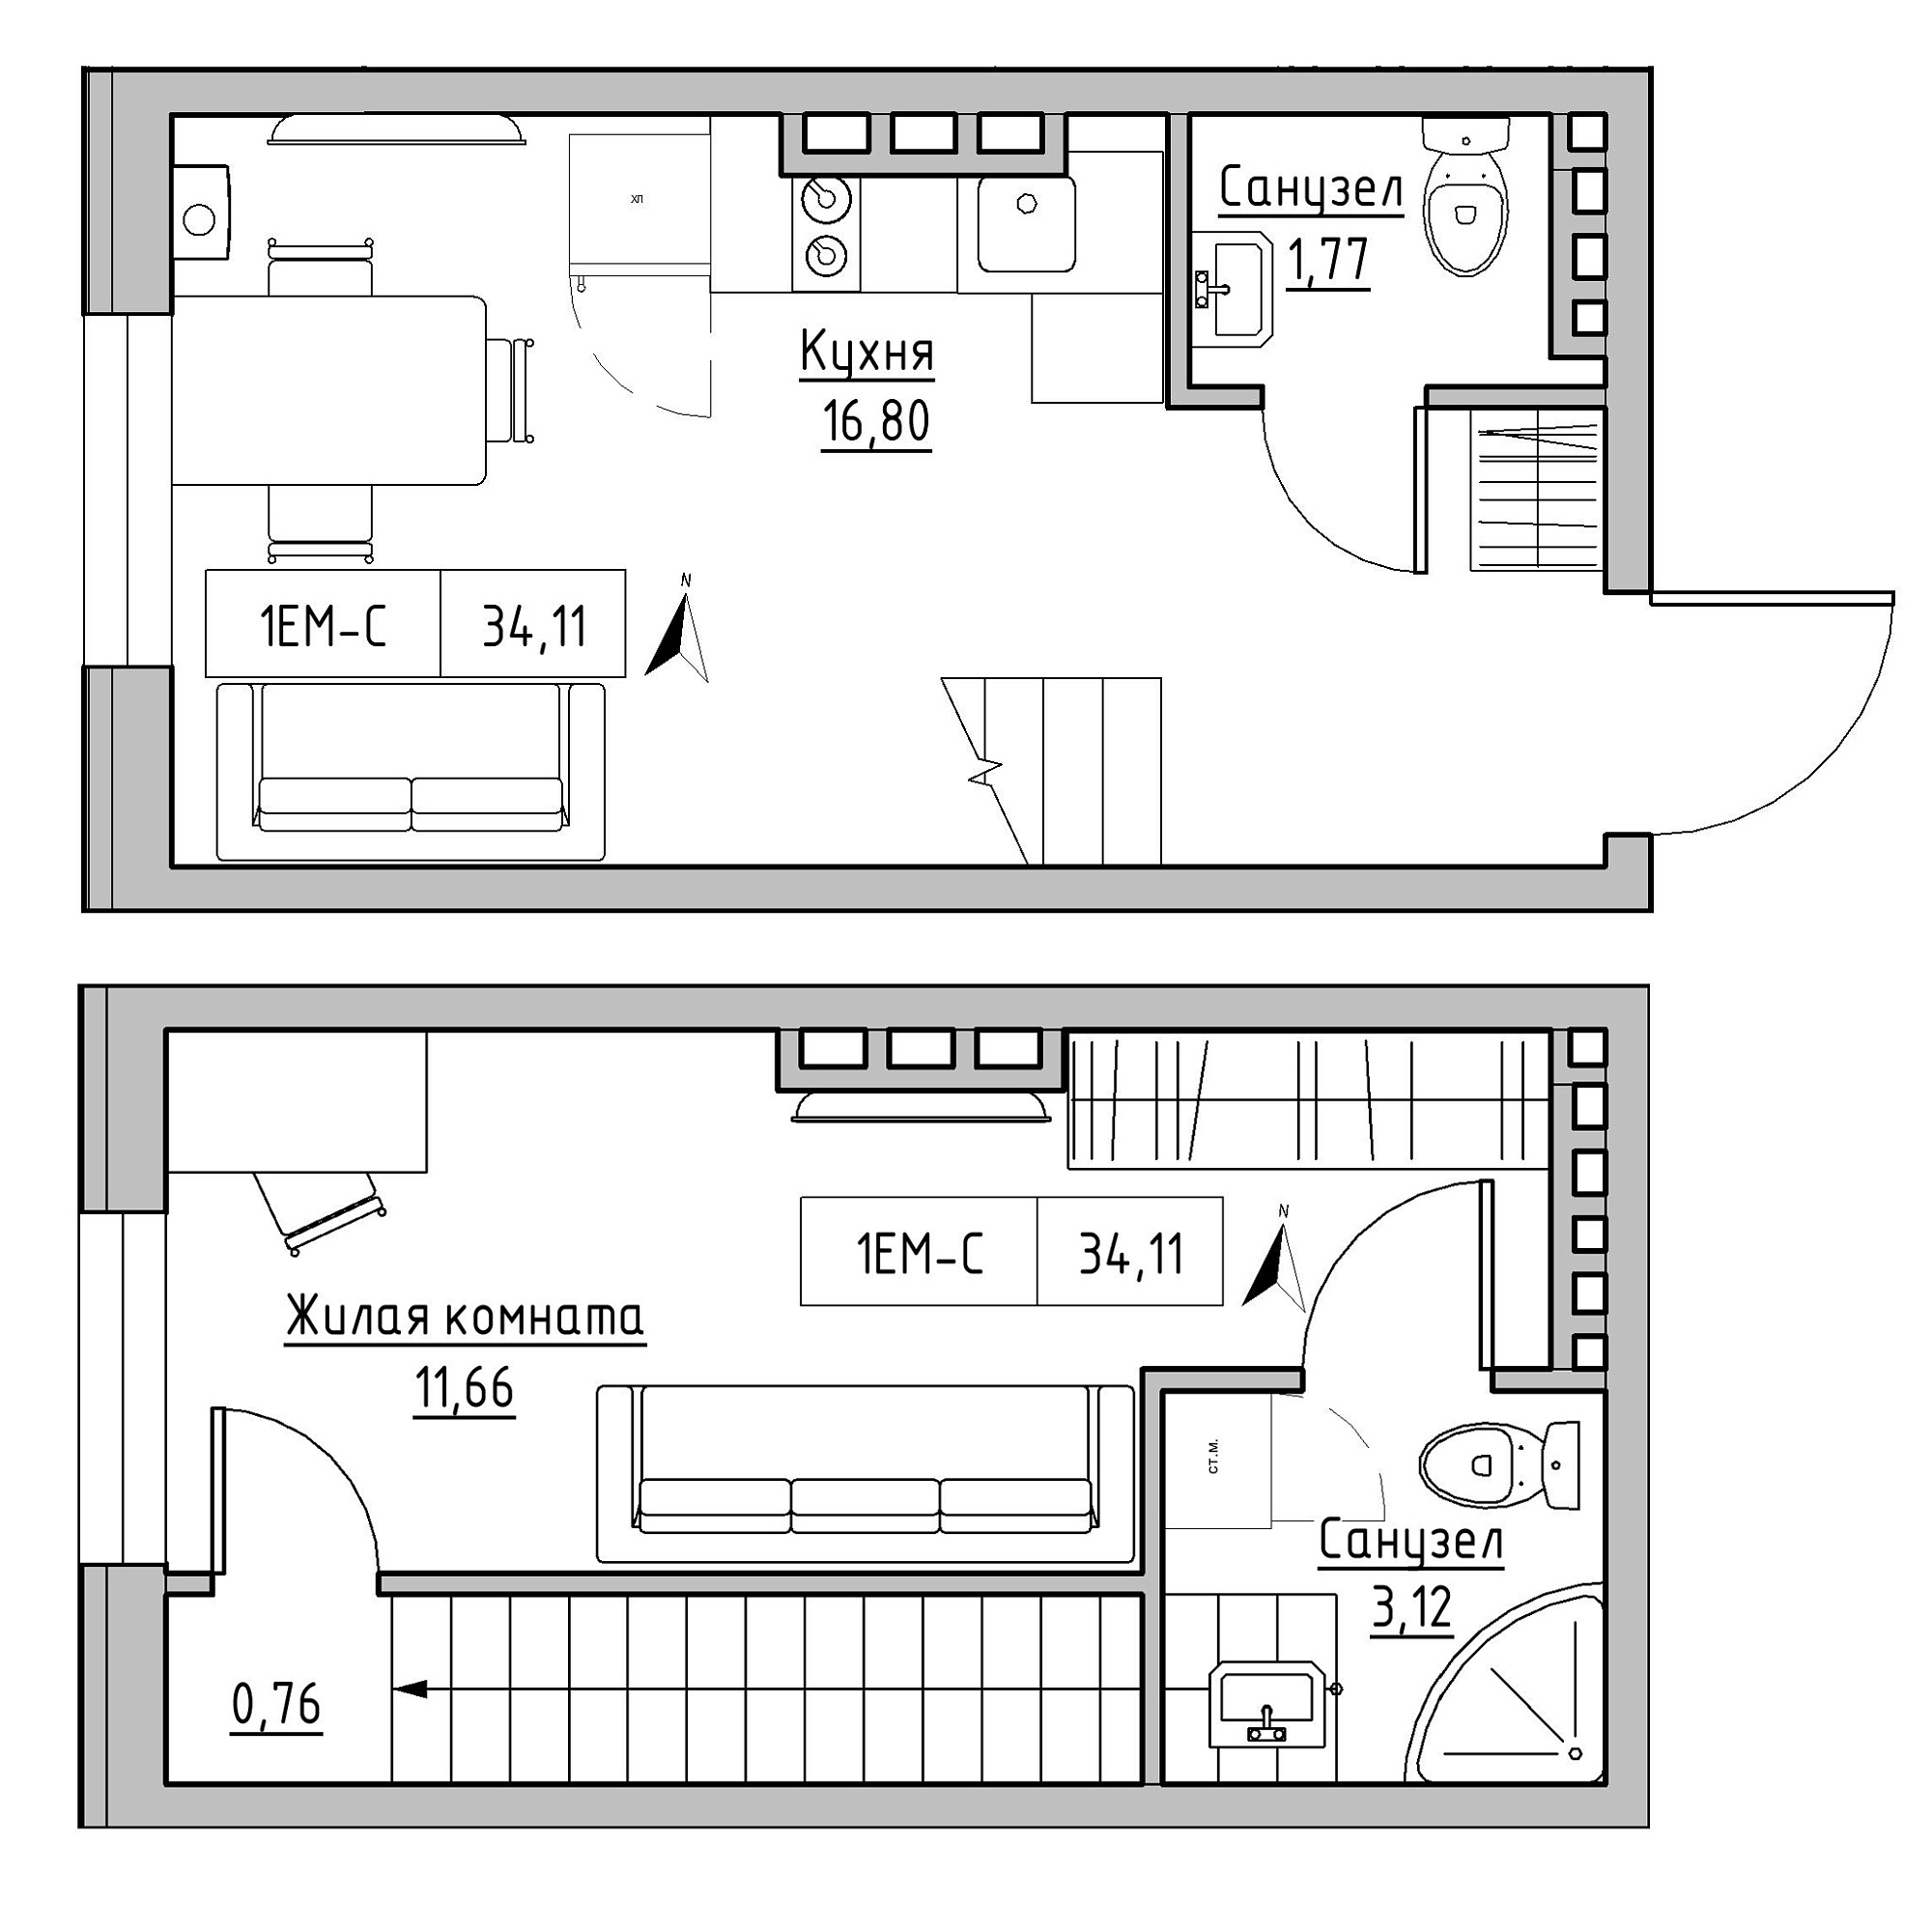 Planning 2-lvl flats area 34.11m2, KS-024-03/0013.